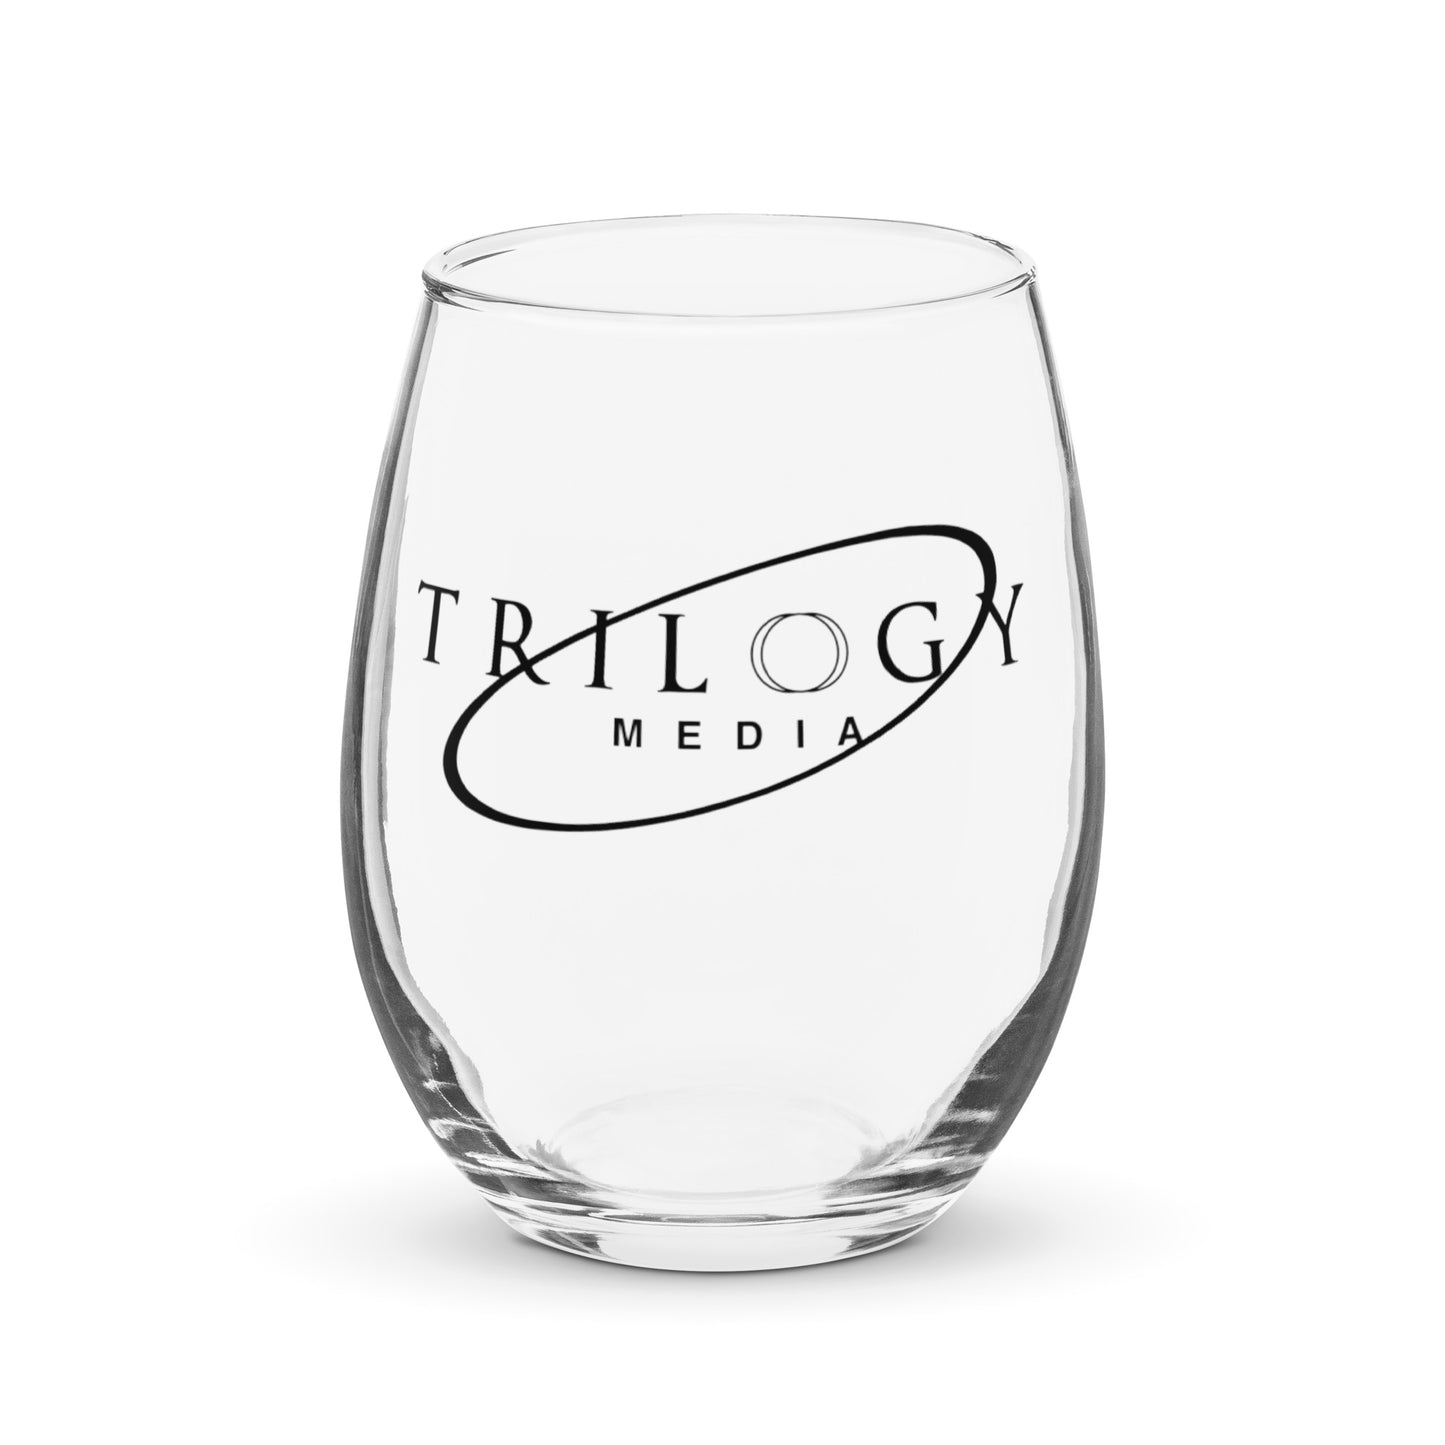 TRILOGY MEDIA LOGO | Stemless wine glass